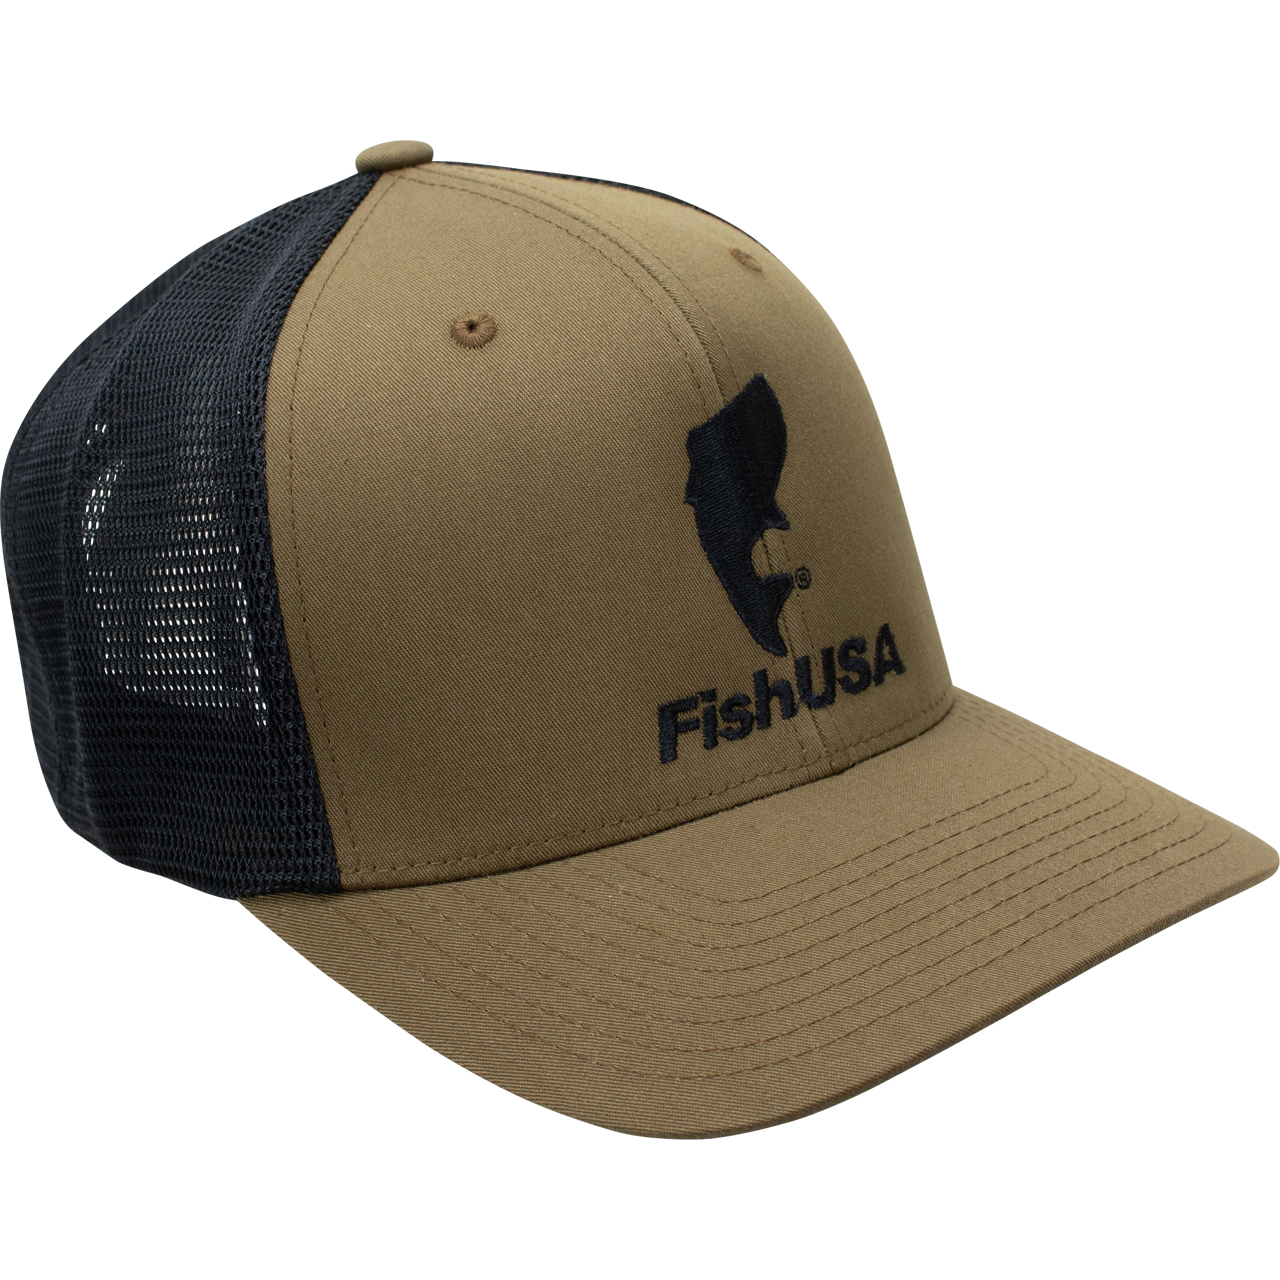 FishUSA Trucker FishUSA Flexfit | Hat